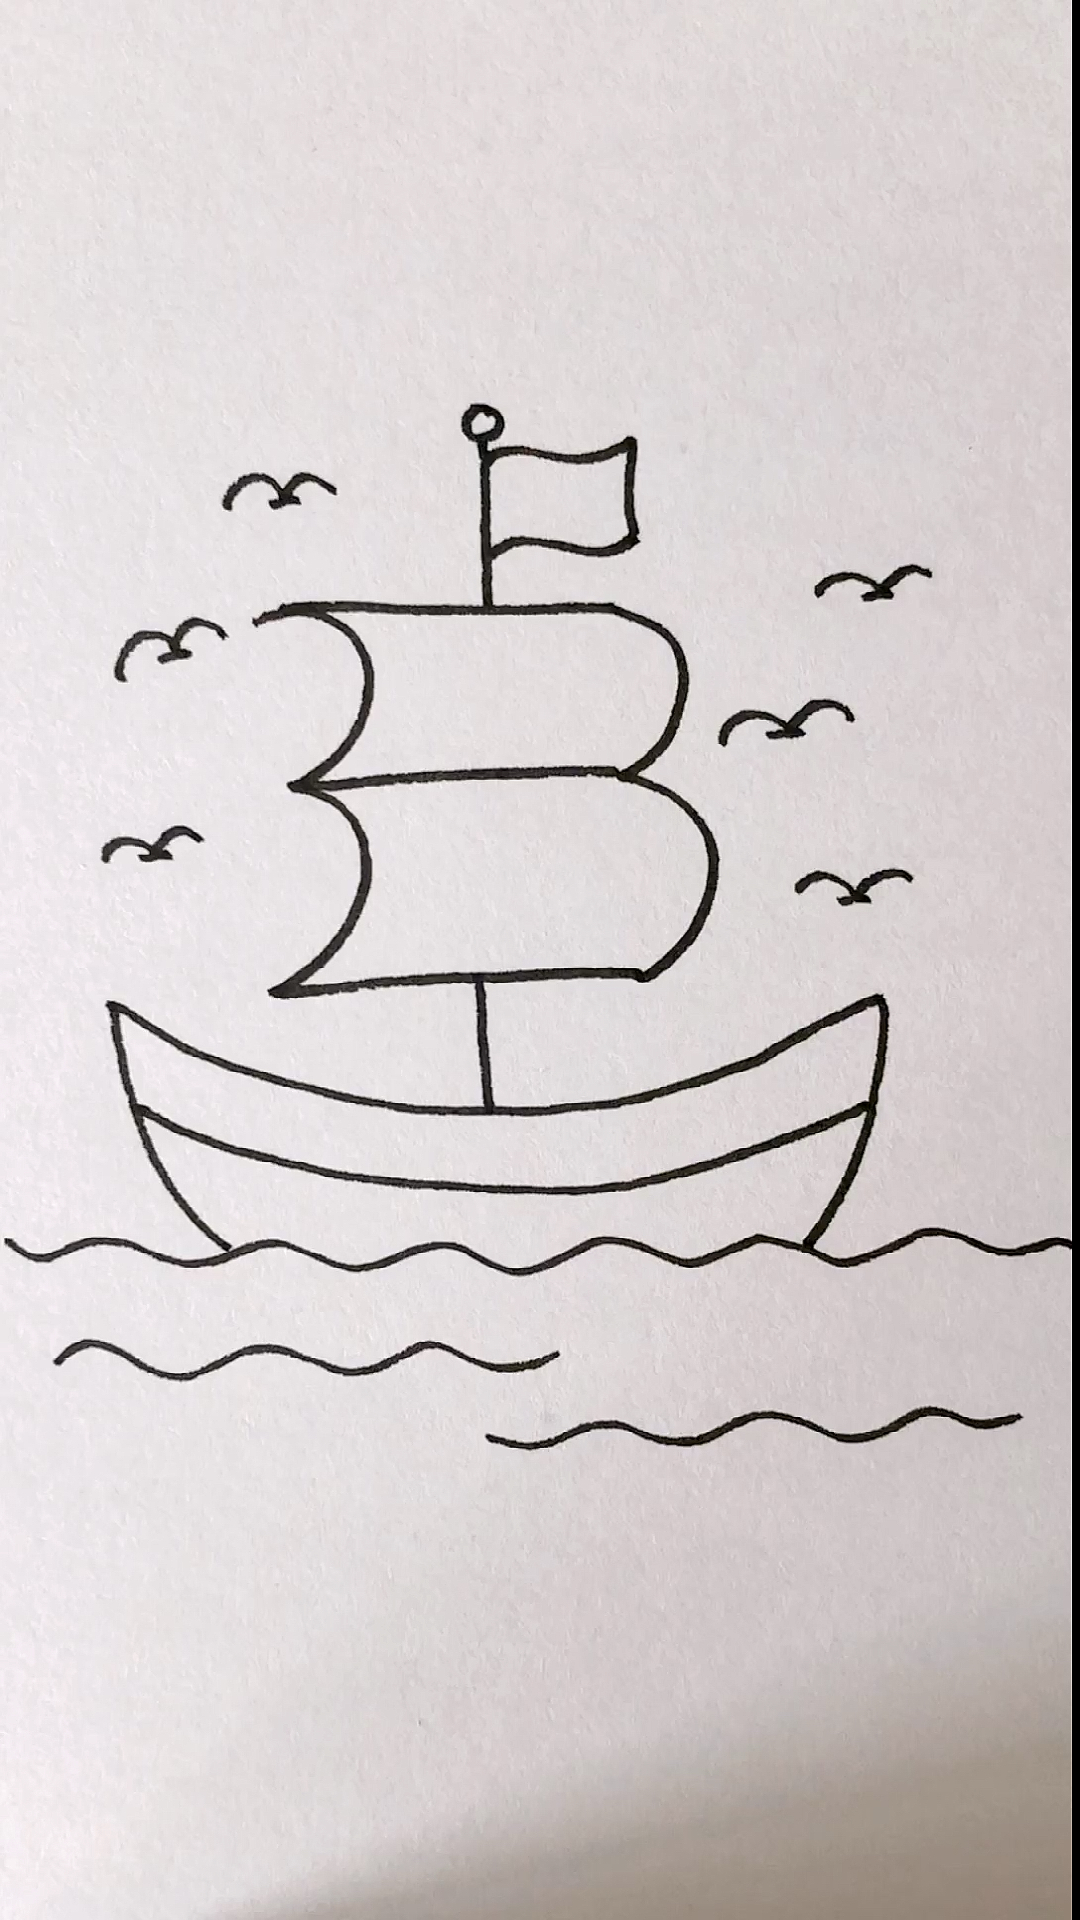 乘风破浪的帆船简笔画图片